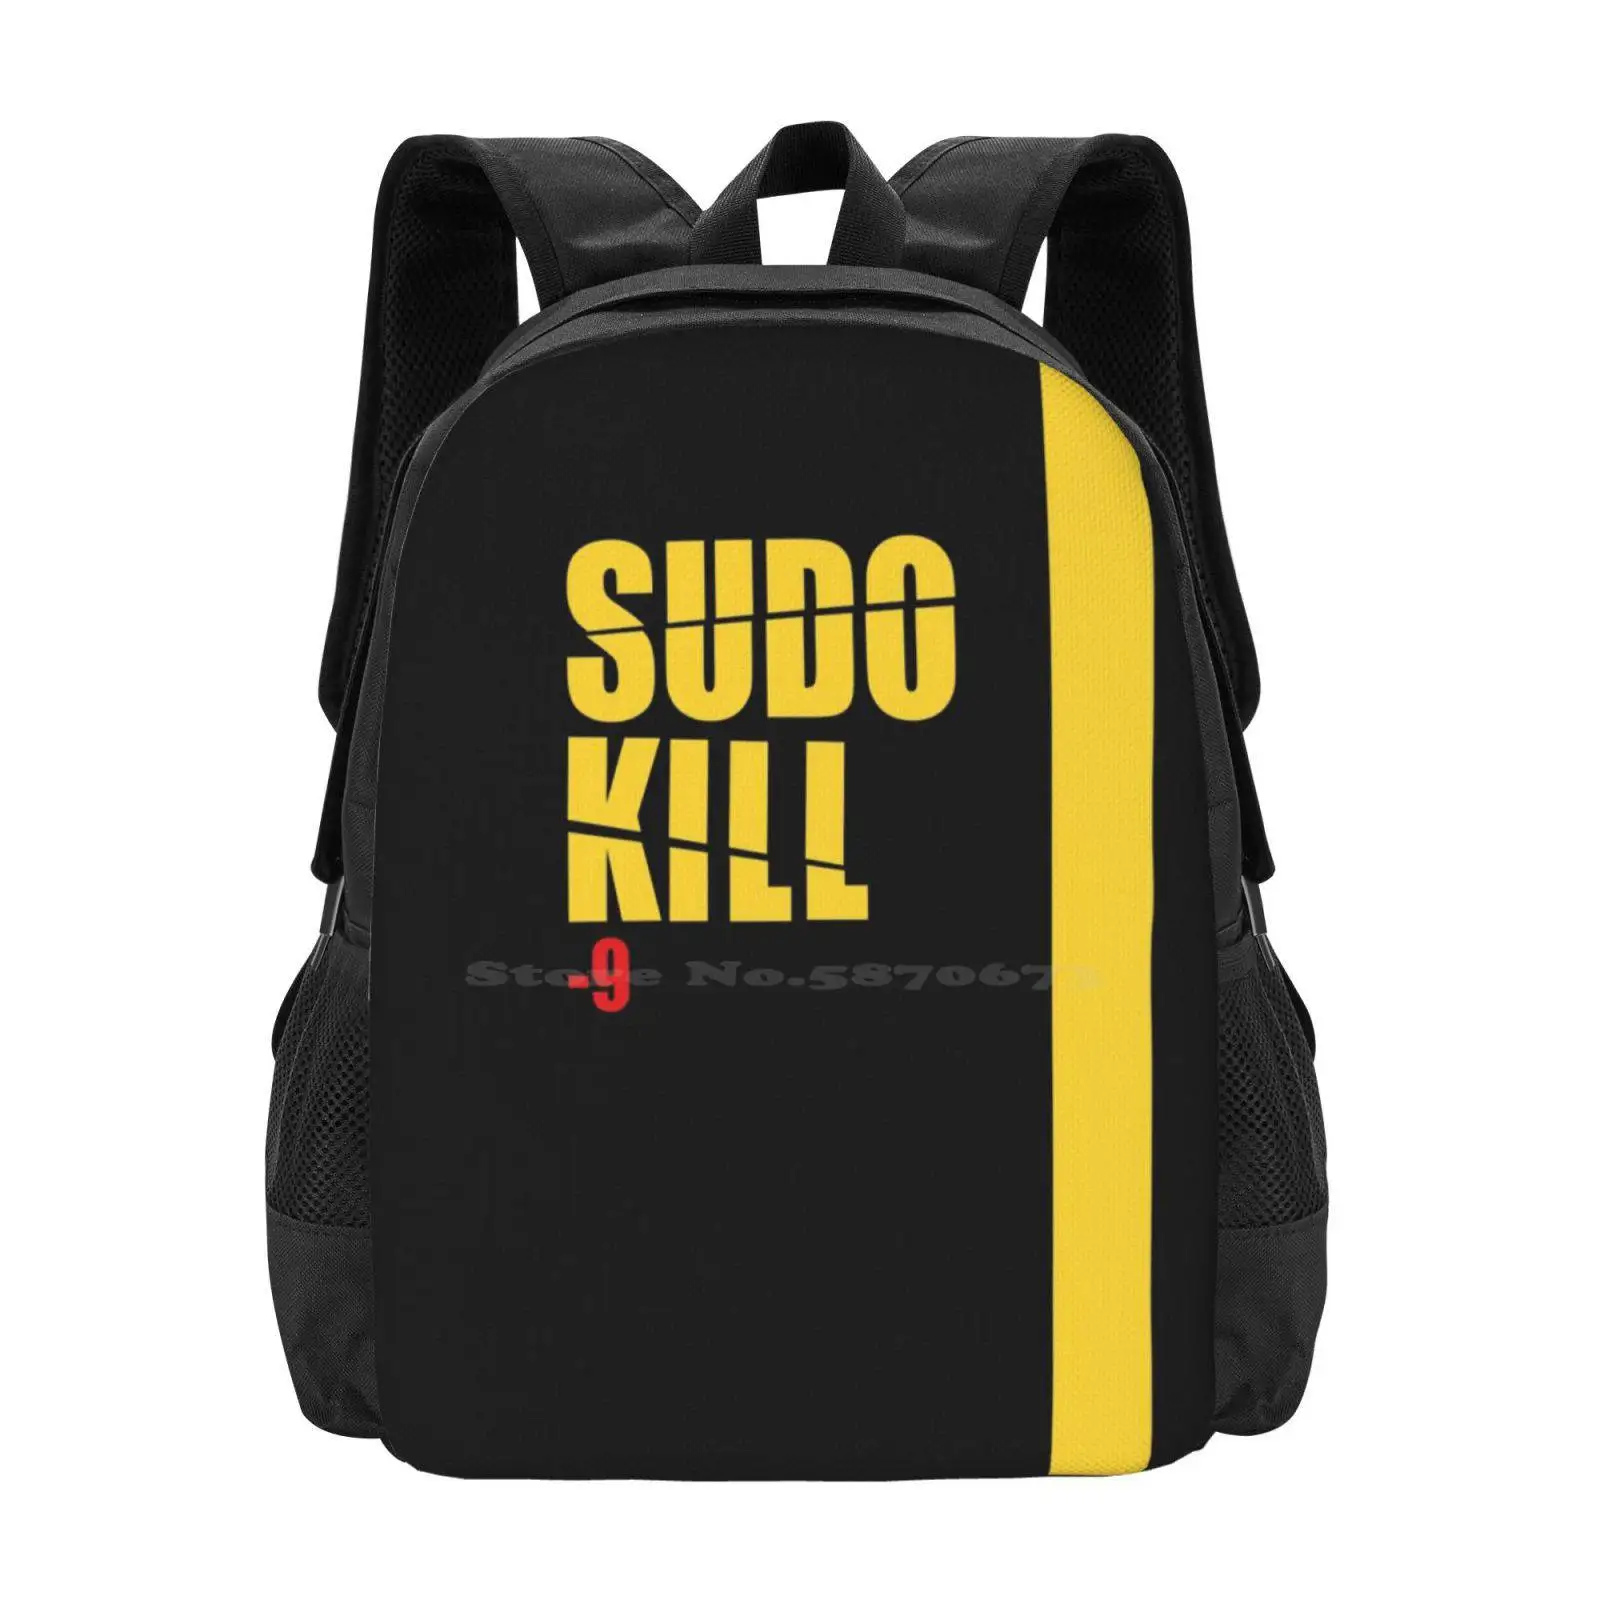 

Sudo Kill Yellow 3D Print Design Backpack Student Bag Linux Kill Shell Programmer Developer Software Engineer Code Devops